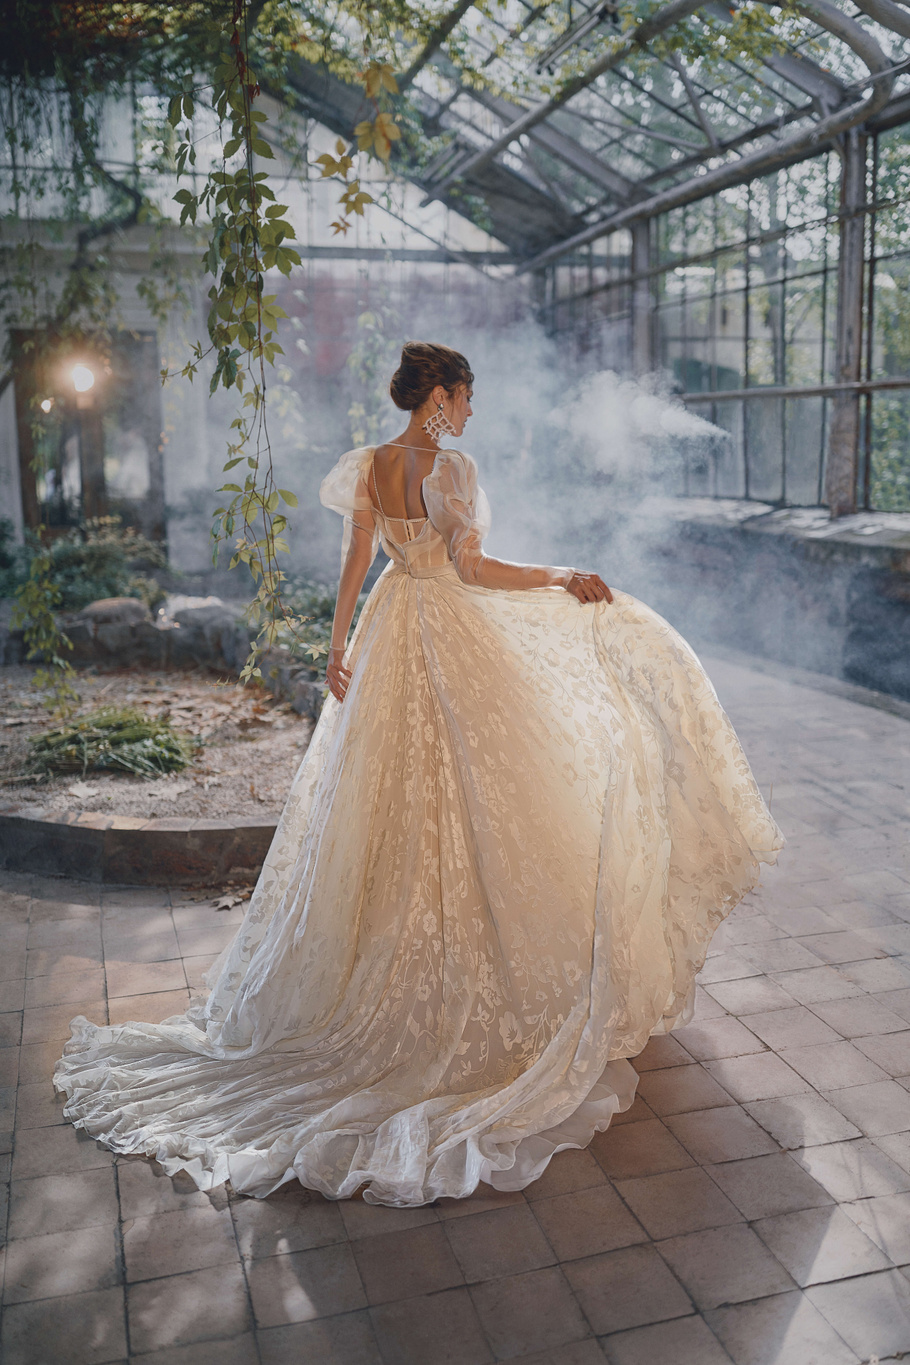 Купить свадебное платье «Йанг» Анже Этуаль из коллекции Леди Перл 2021 года в салоне «Мэри Трюфель»